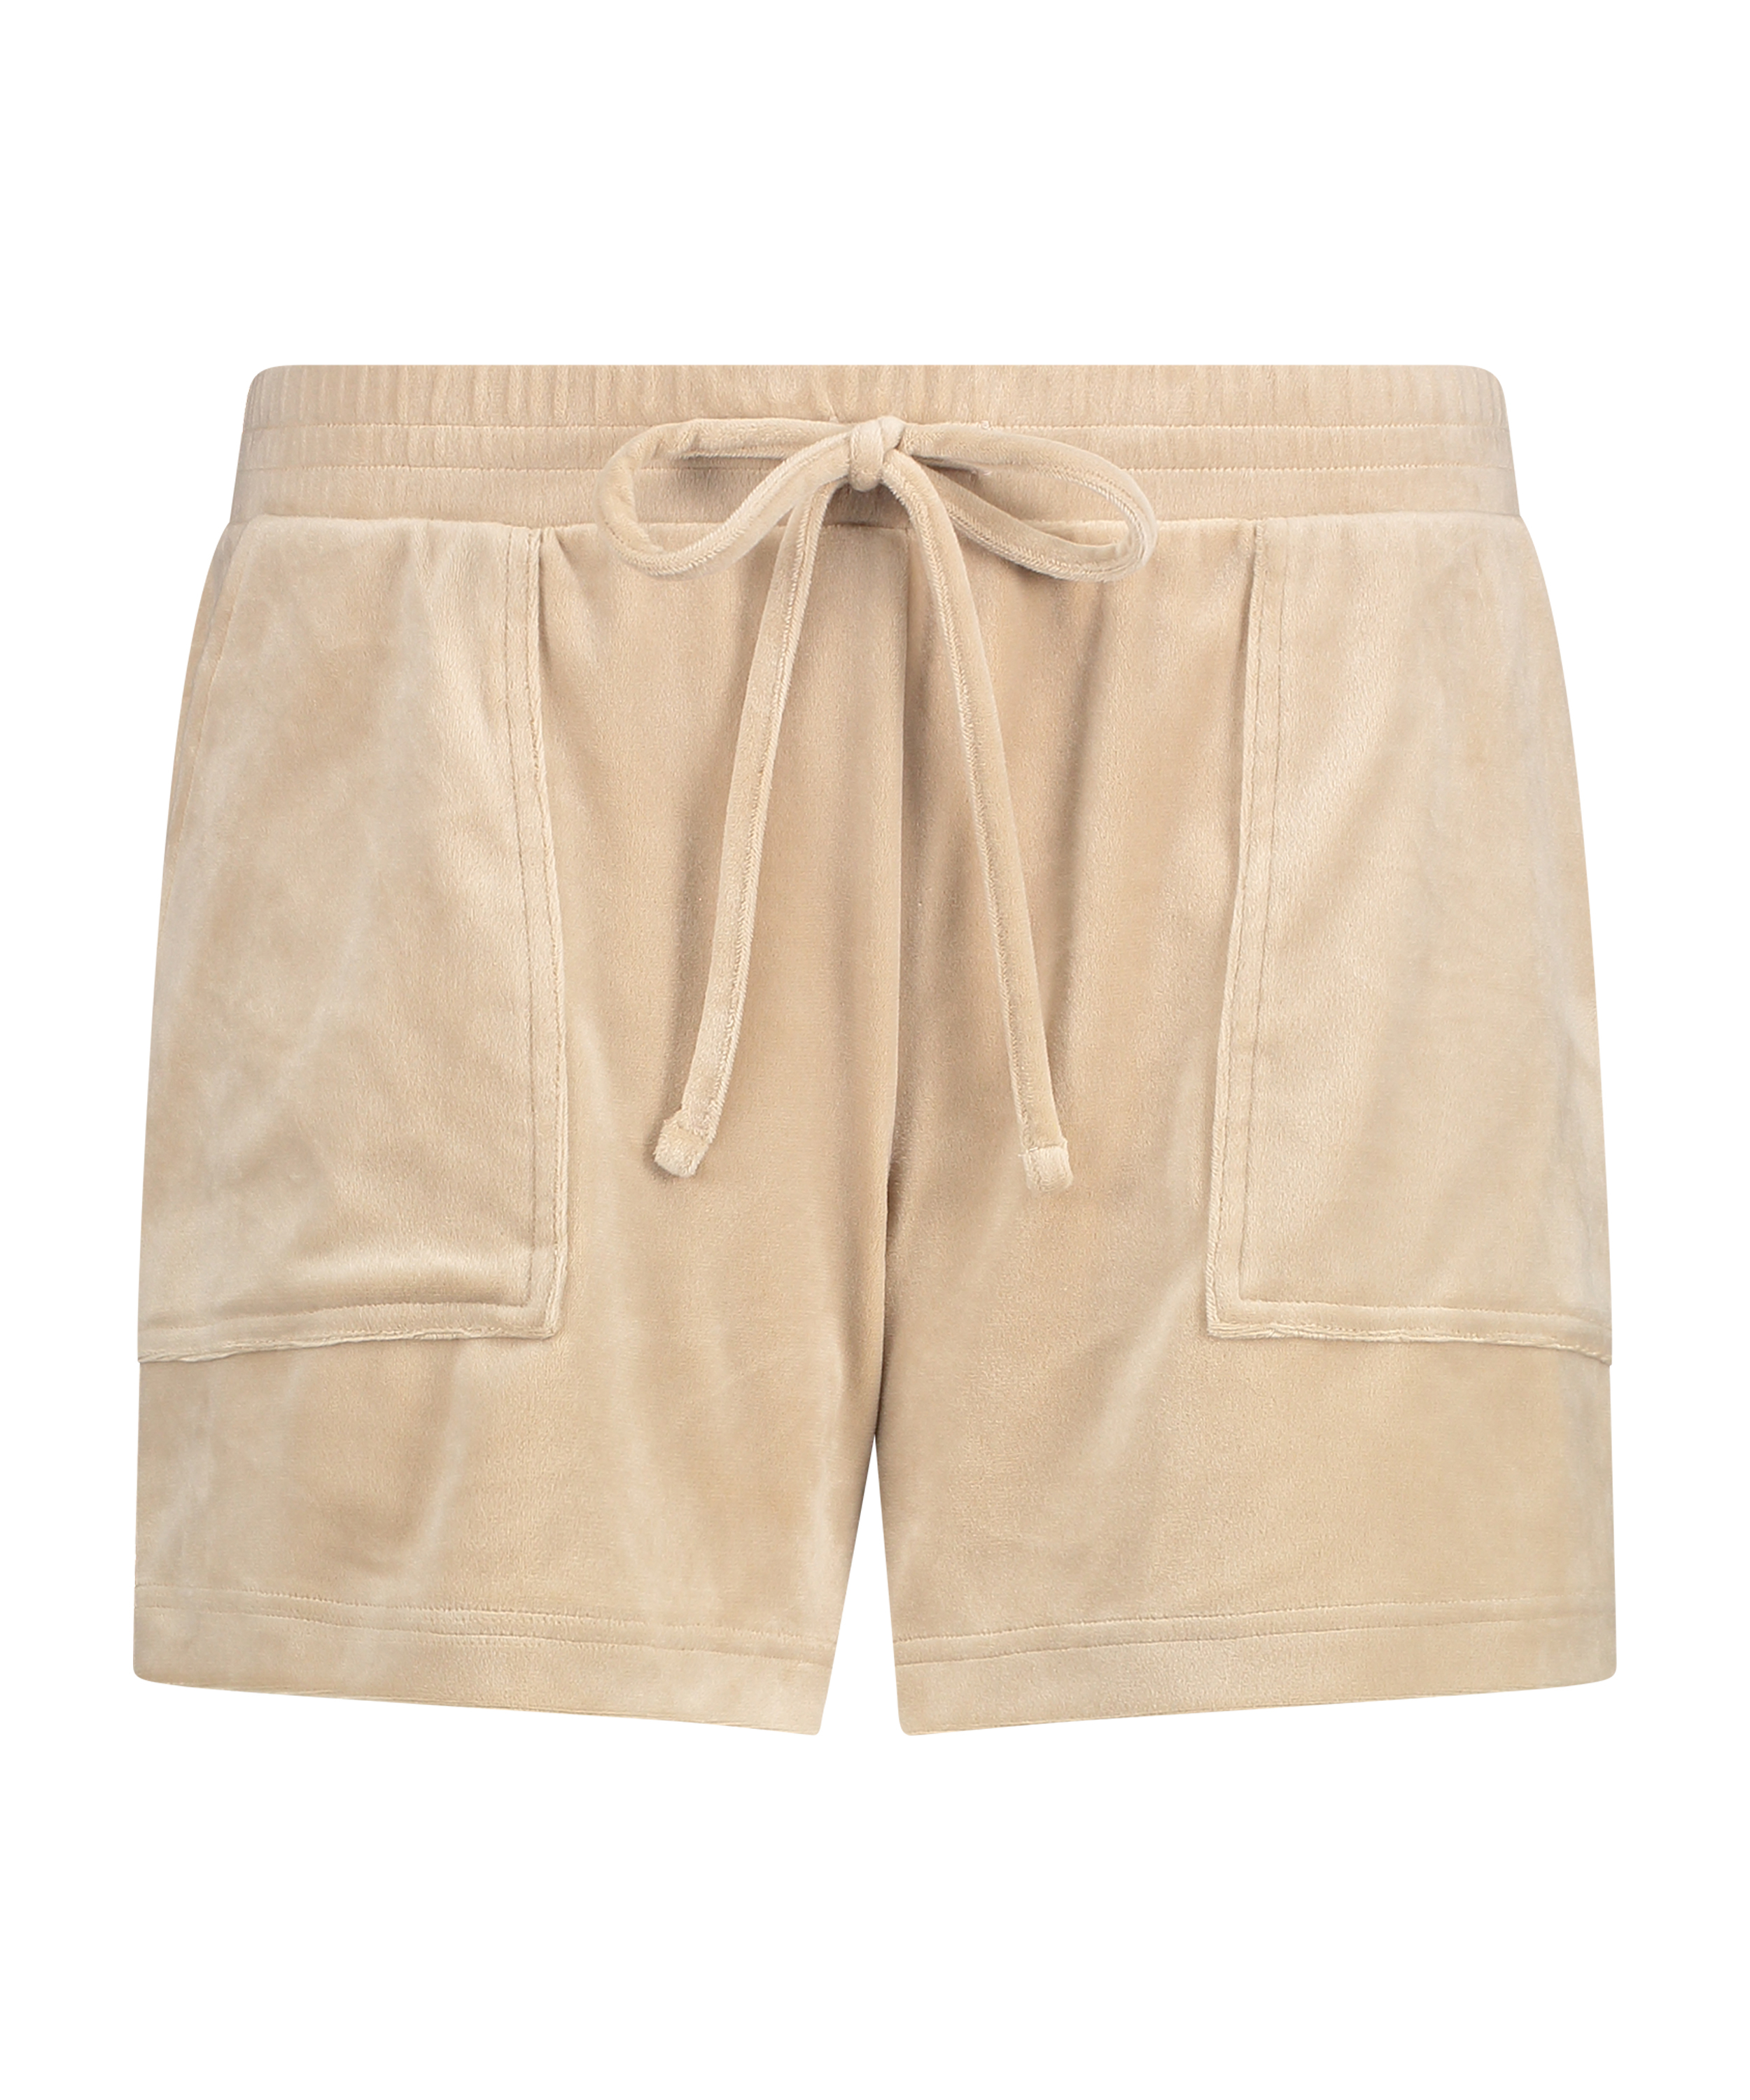 Velvet Pocket shorts, Beige, main